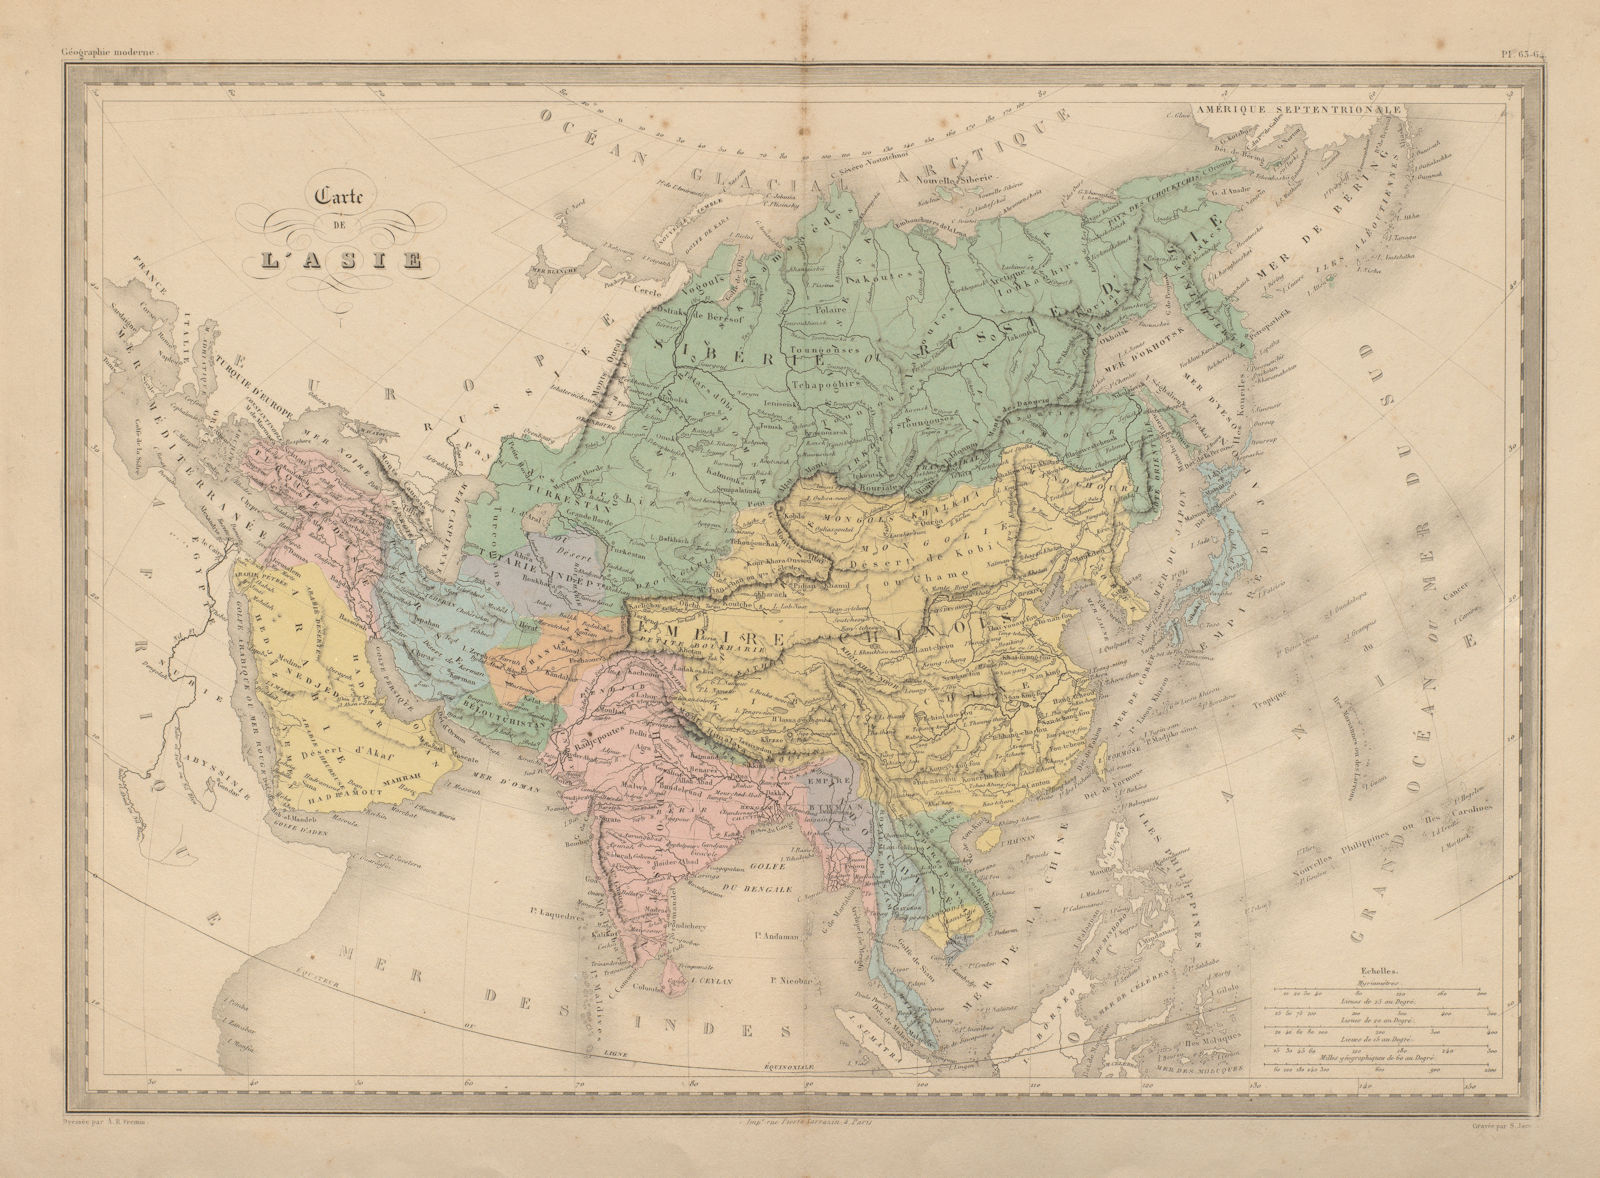 Carte de L'Asie. Asia. China India persia Arabia Indochina. MALTE-BRUN c1871 map